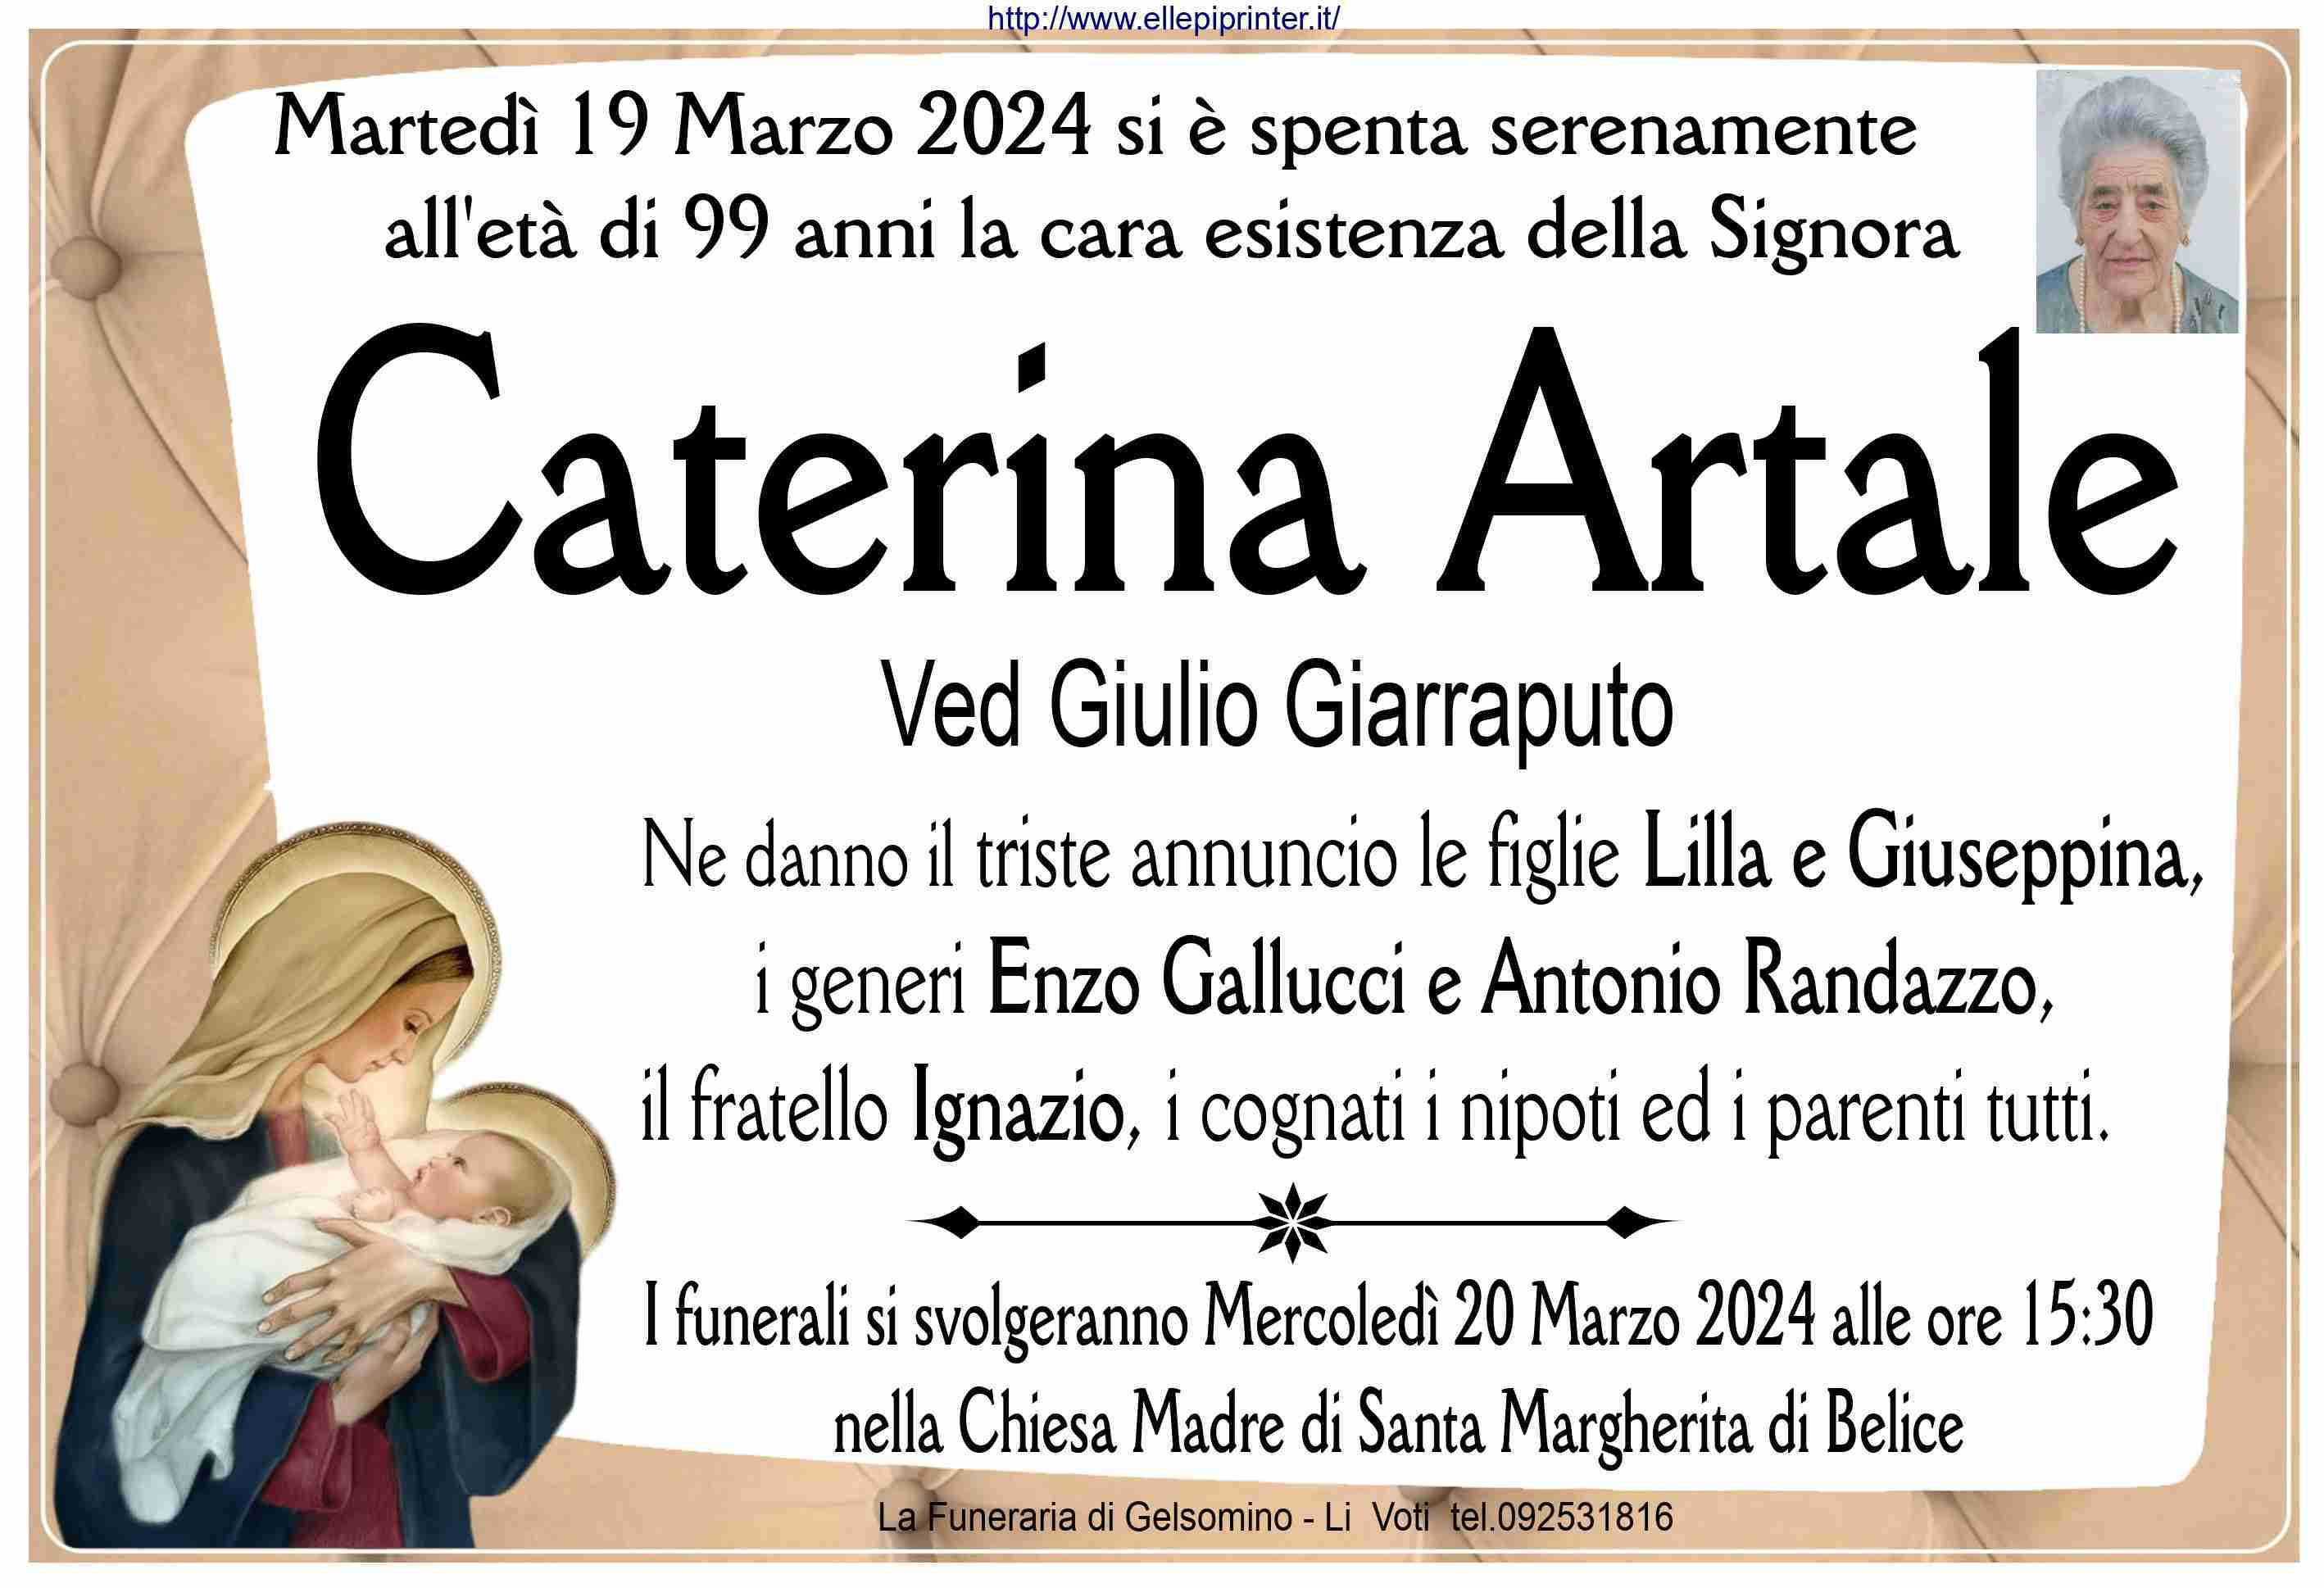 Caterina Artale